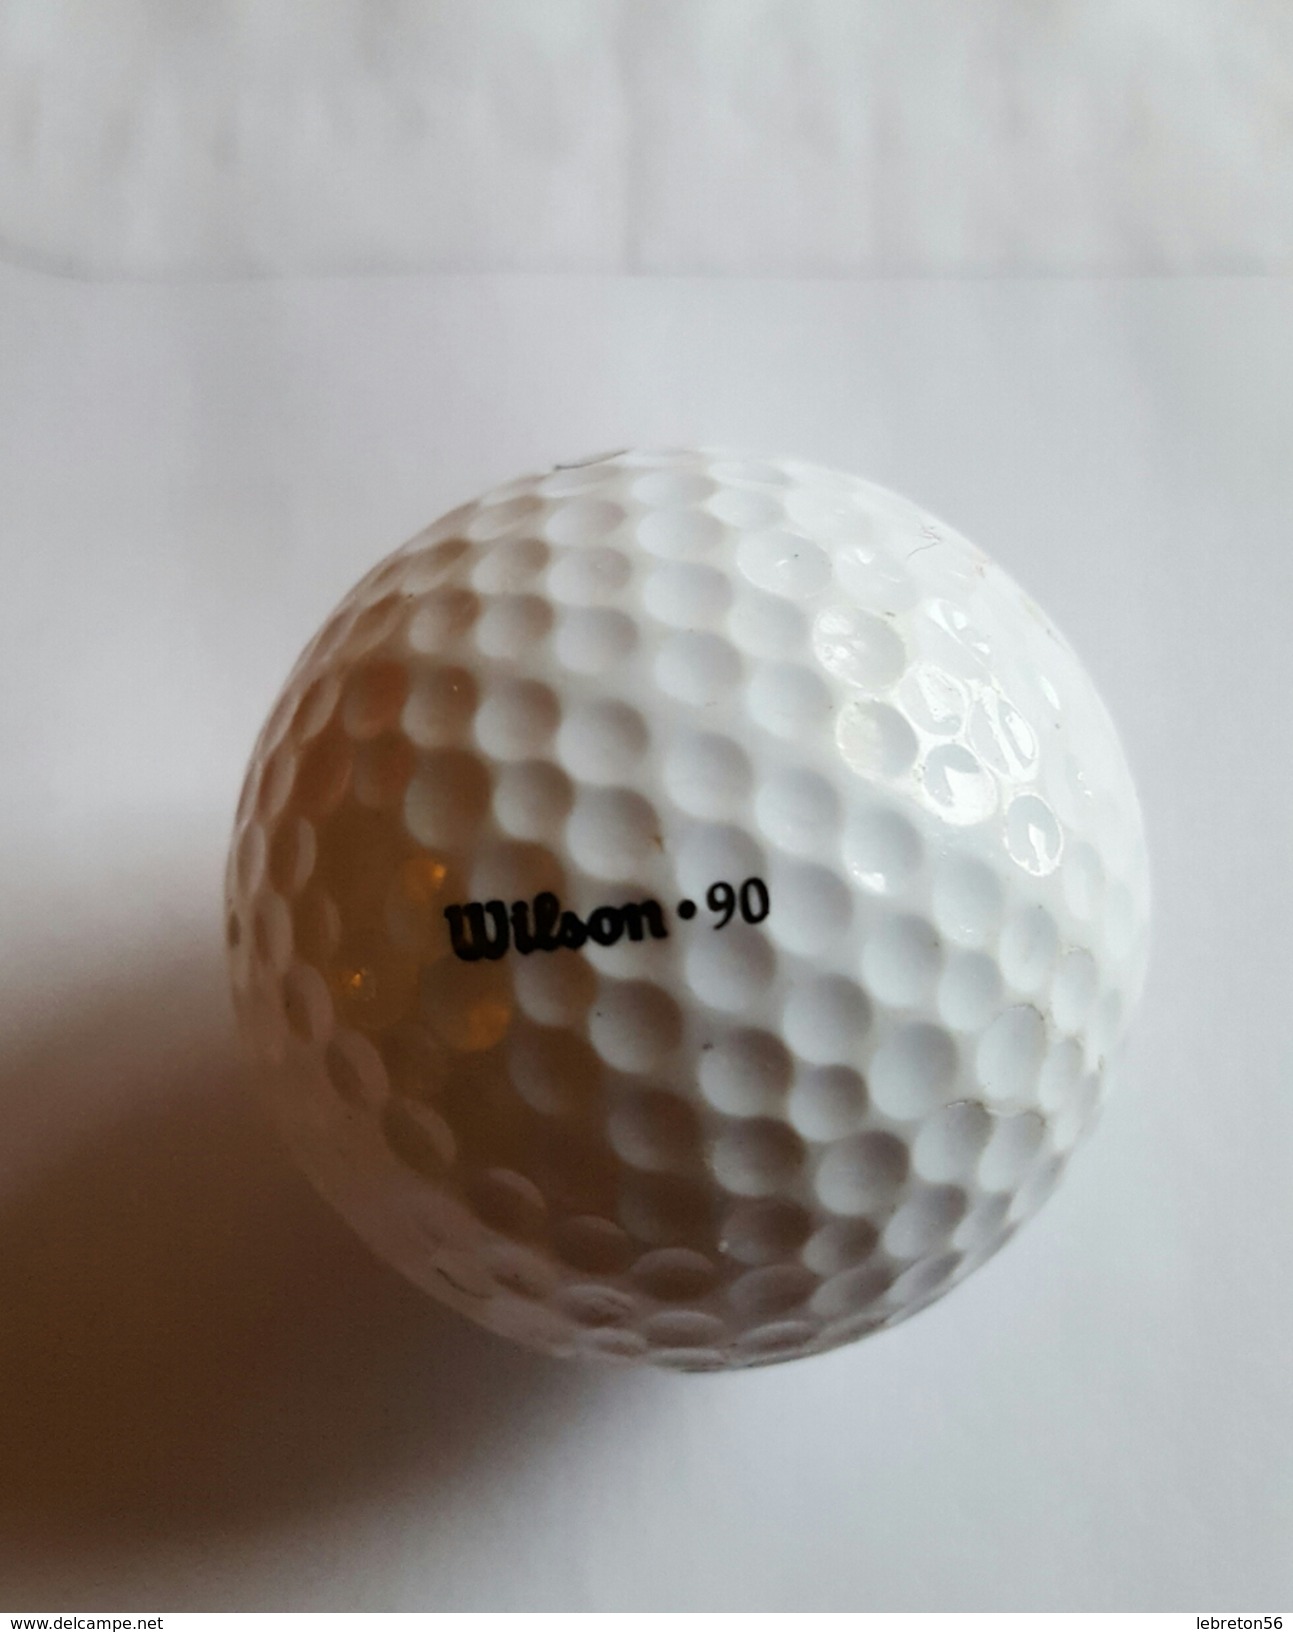 Joli 1 Balle De Golf Collection ULTRA 3 Wilson.90 - Bekleidung, Souvenirs Und Sonstige